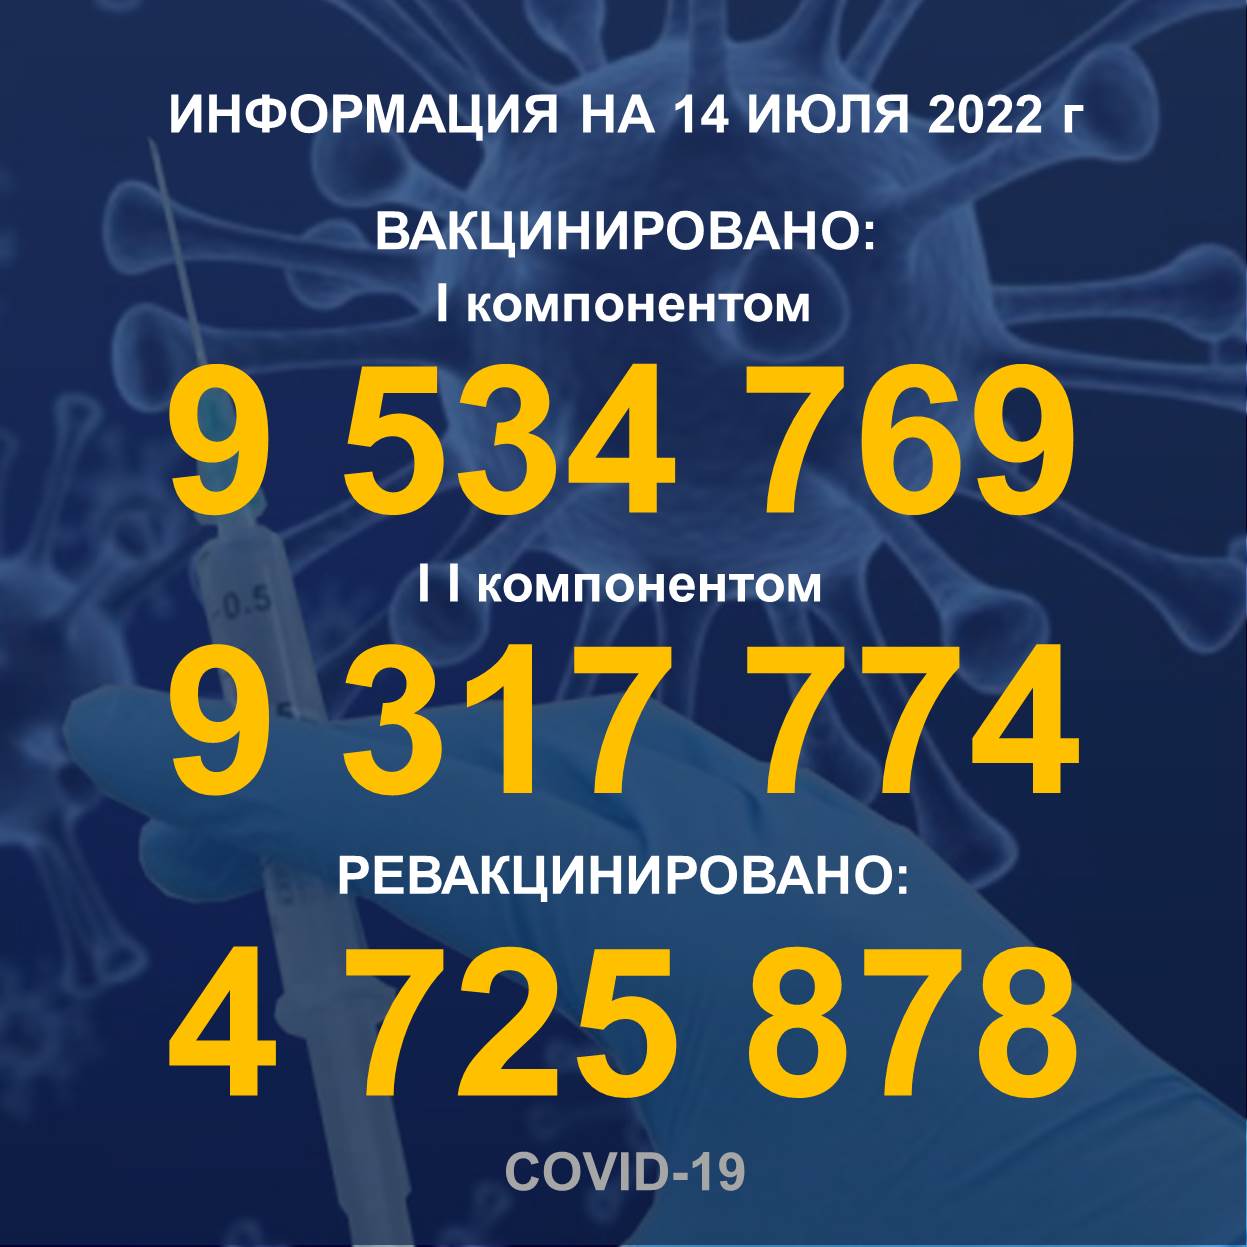 Количество людей, получивших вакцину Рfizer в Казахстане по состоянию на 14.07.2022 года